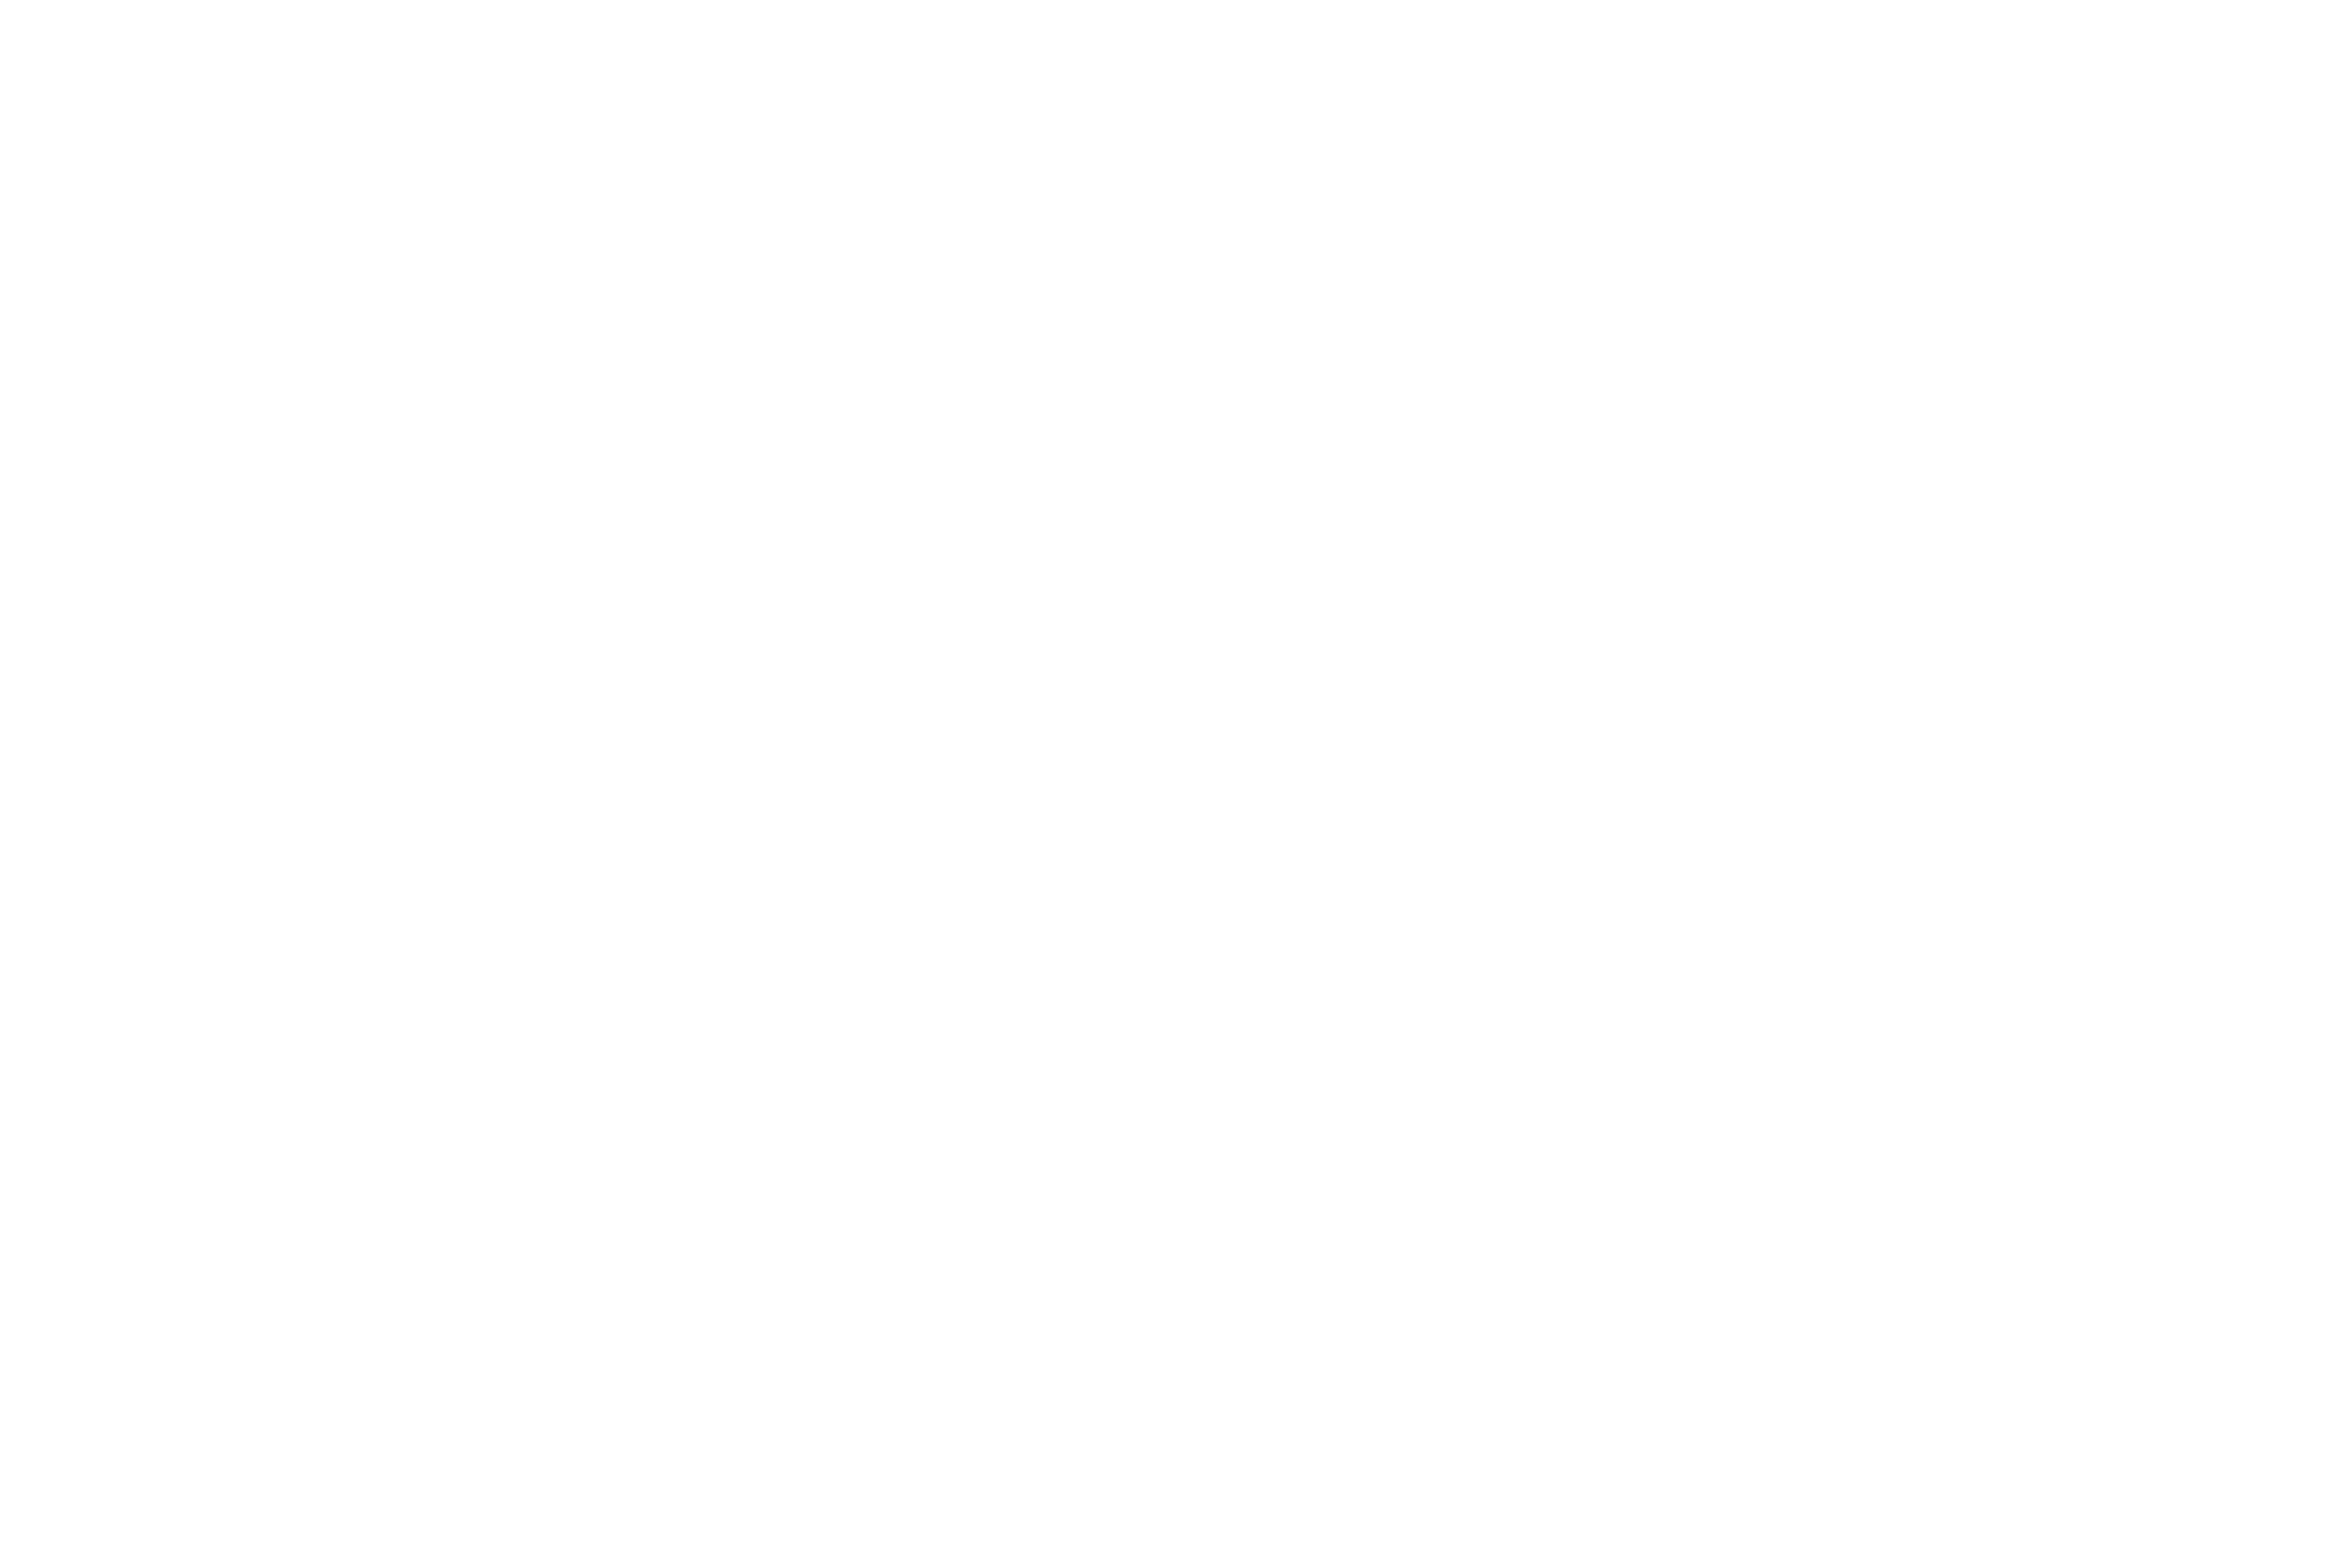 Washington Ensemble Theatre